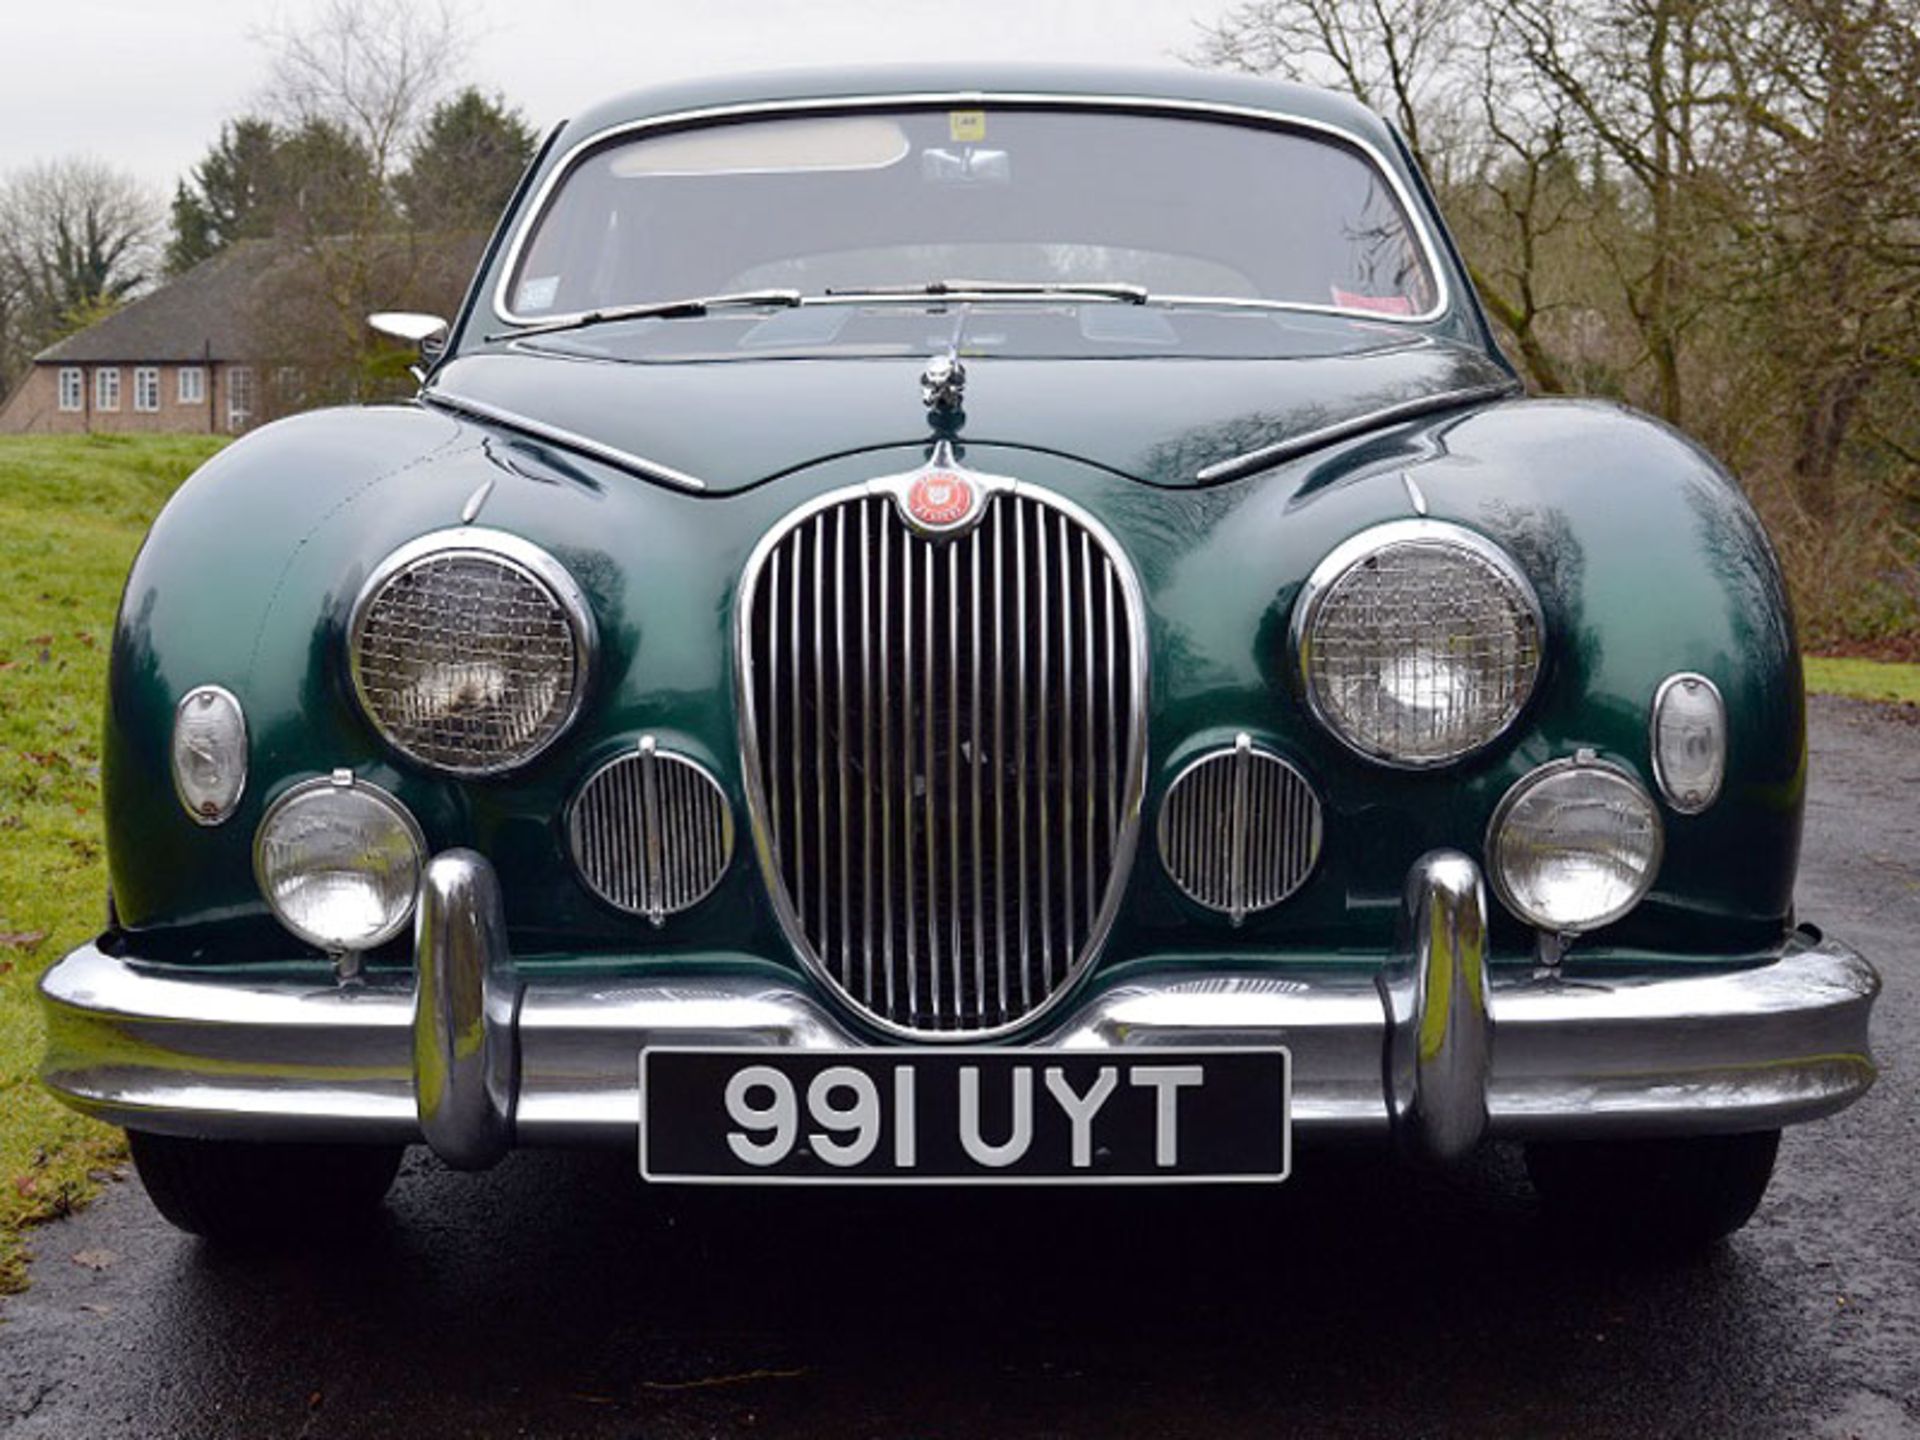 1958 Jaguar MK I 3.4 Litre - Image 2 of 7